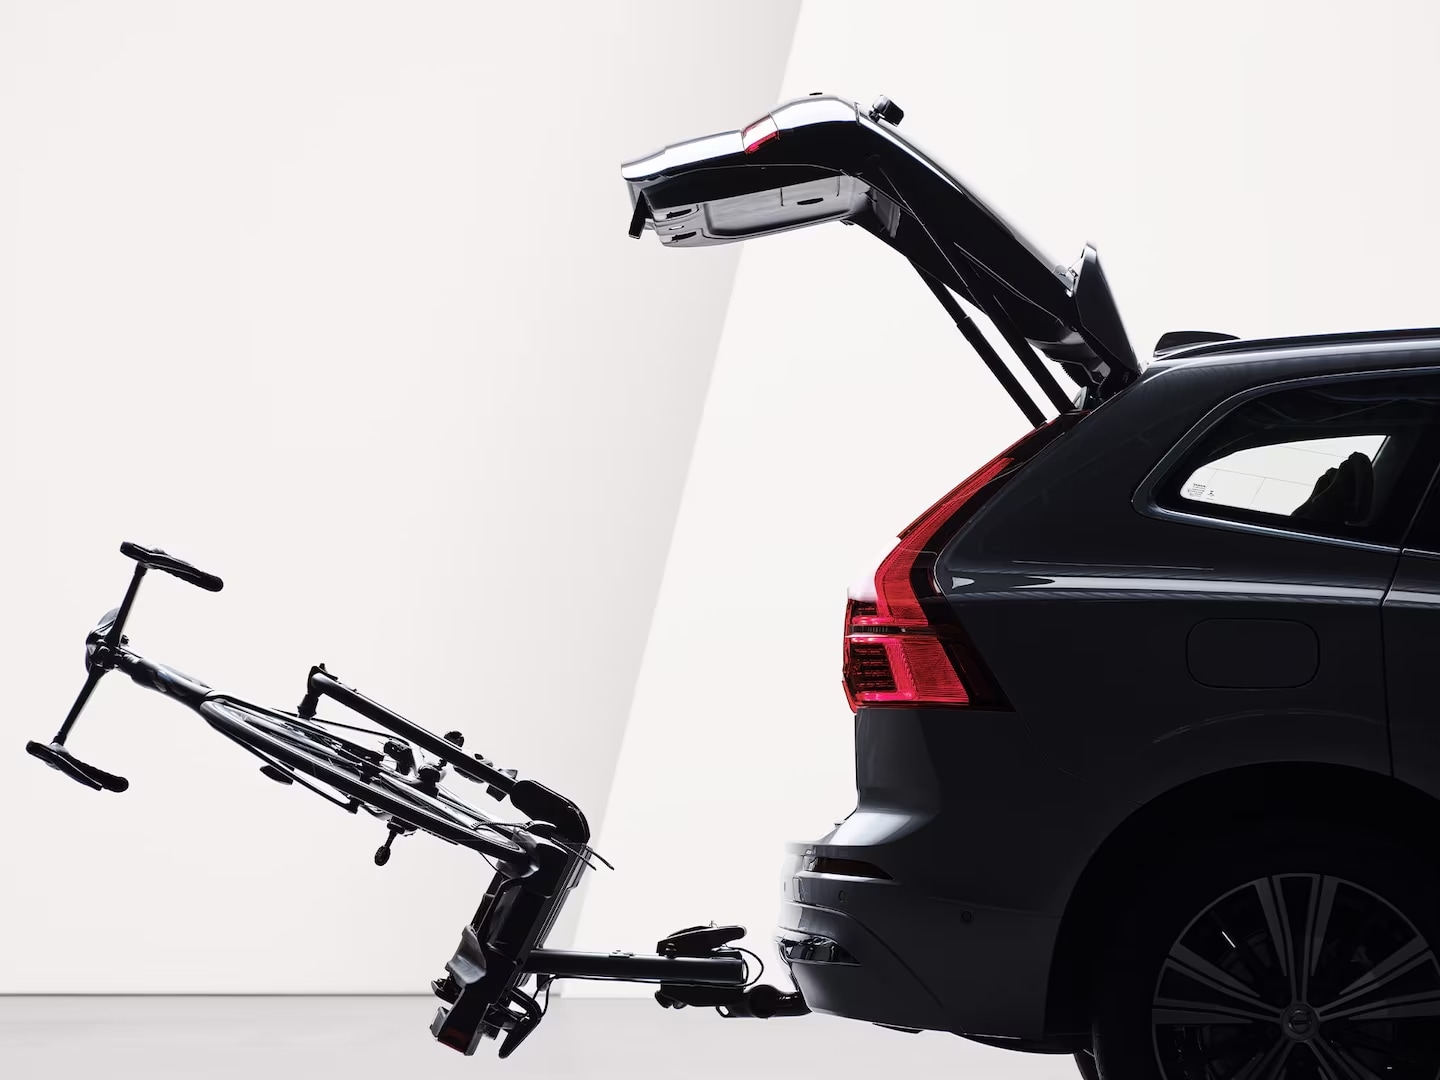 Otwarta klapa tylna i uchwyt na rower przymocowany do złożonego haka holowniczego z tyłu Volvo XC60.